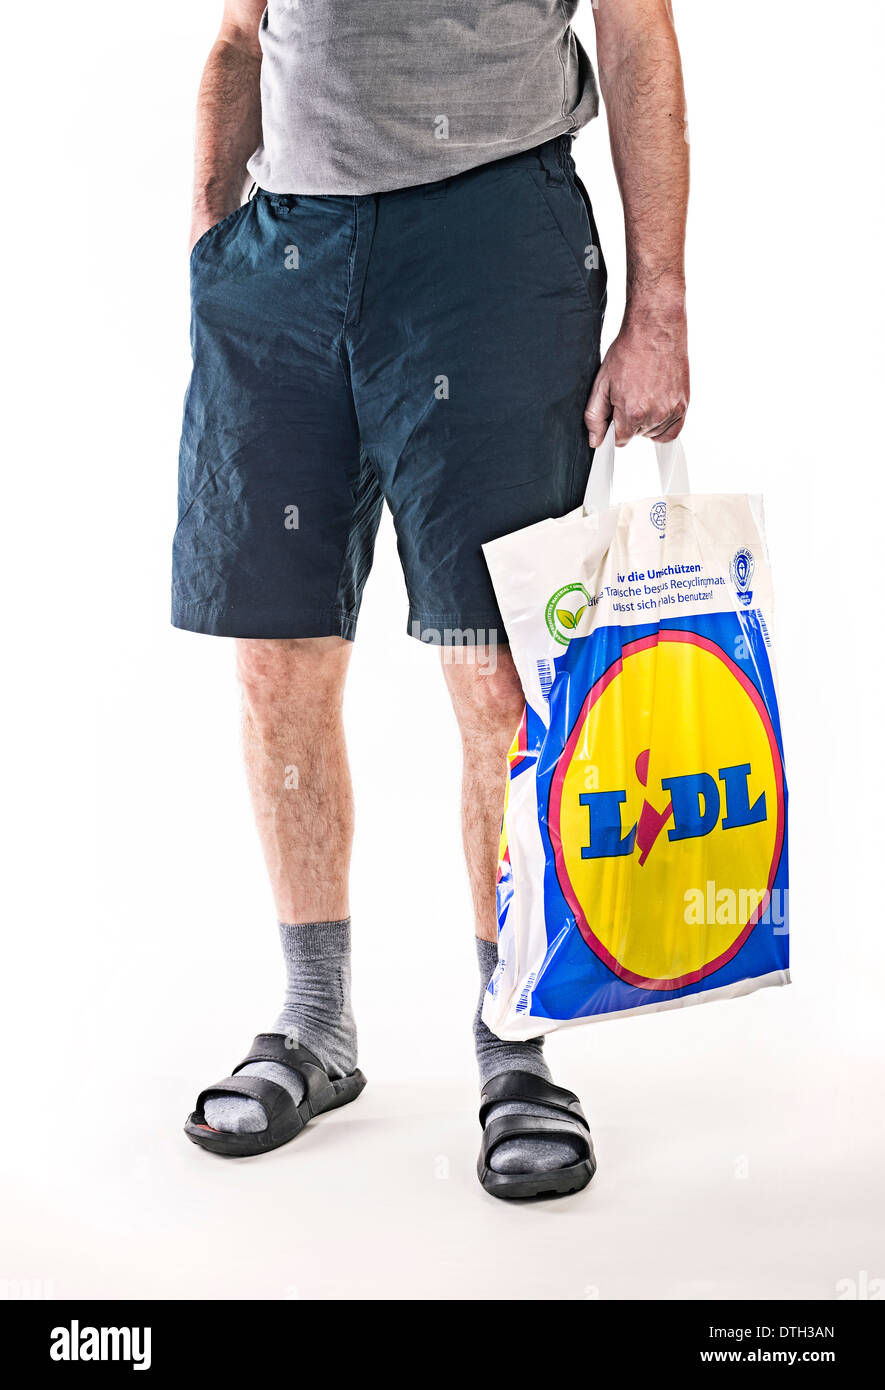 La partie inférieure du corps d'un homme avec le pantalon court, portant un sac en plastique de l'escompteur alimentaire Lidl. Banque D'Images